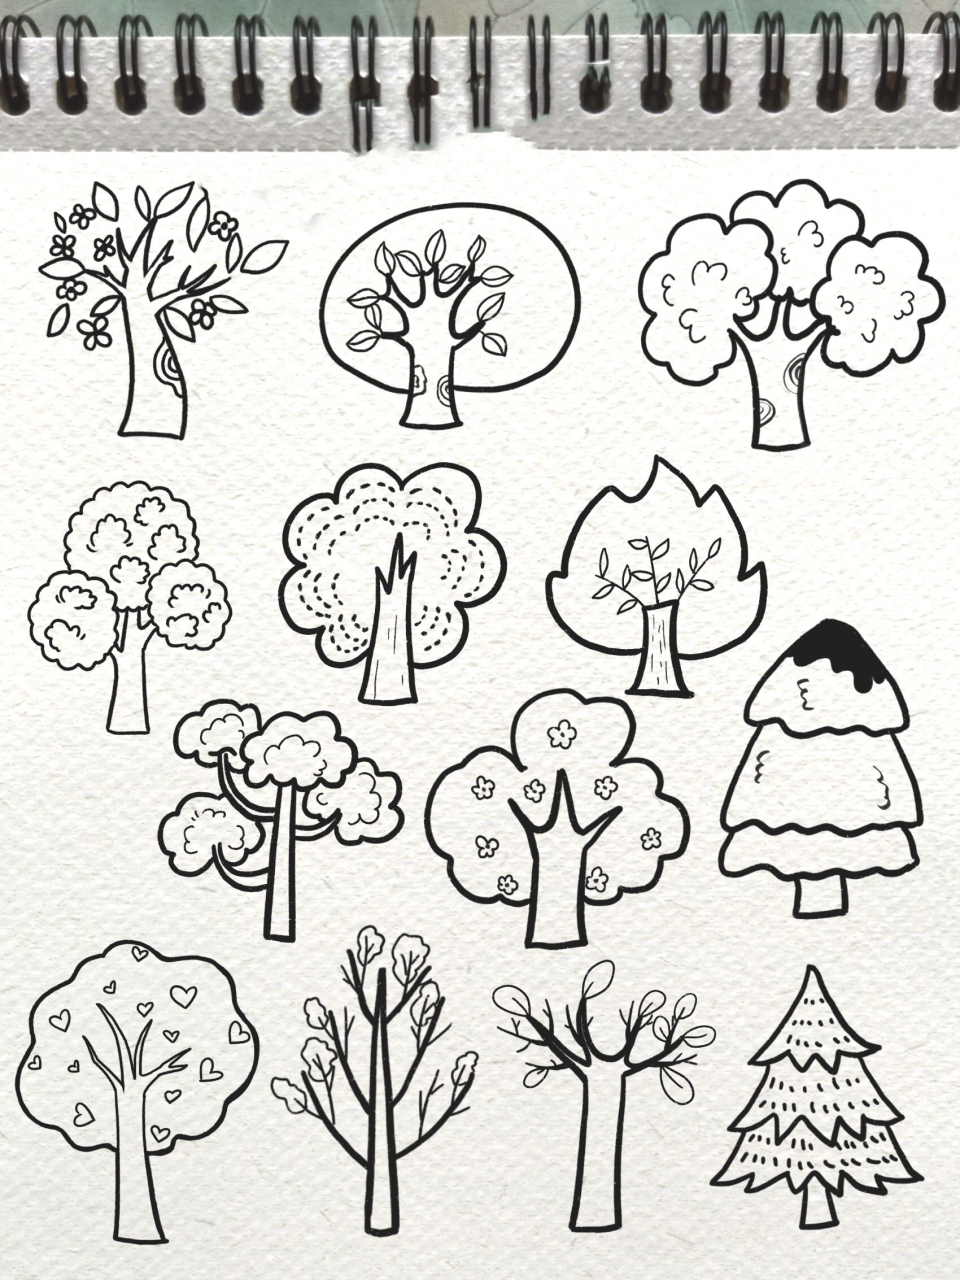 各种树的简笔画图片